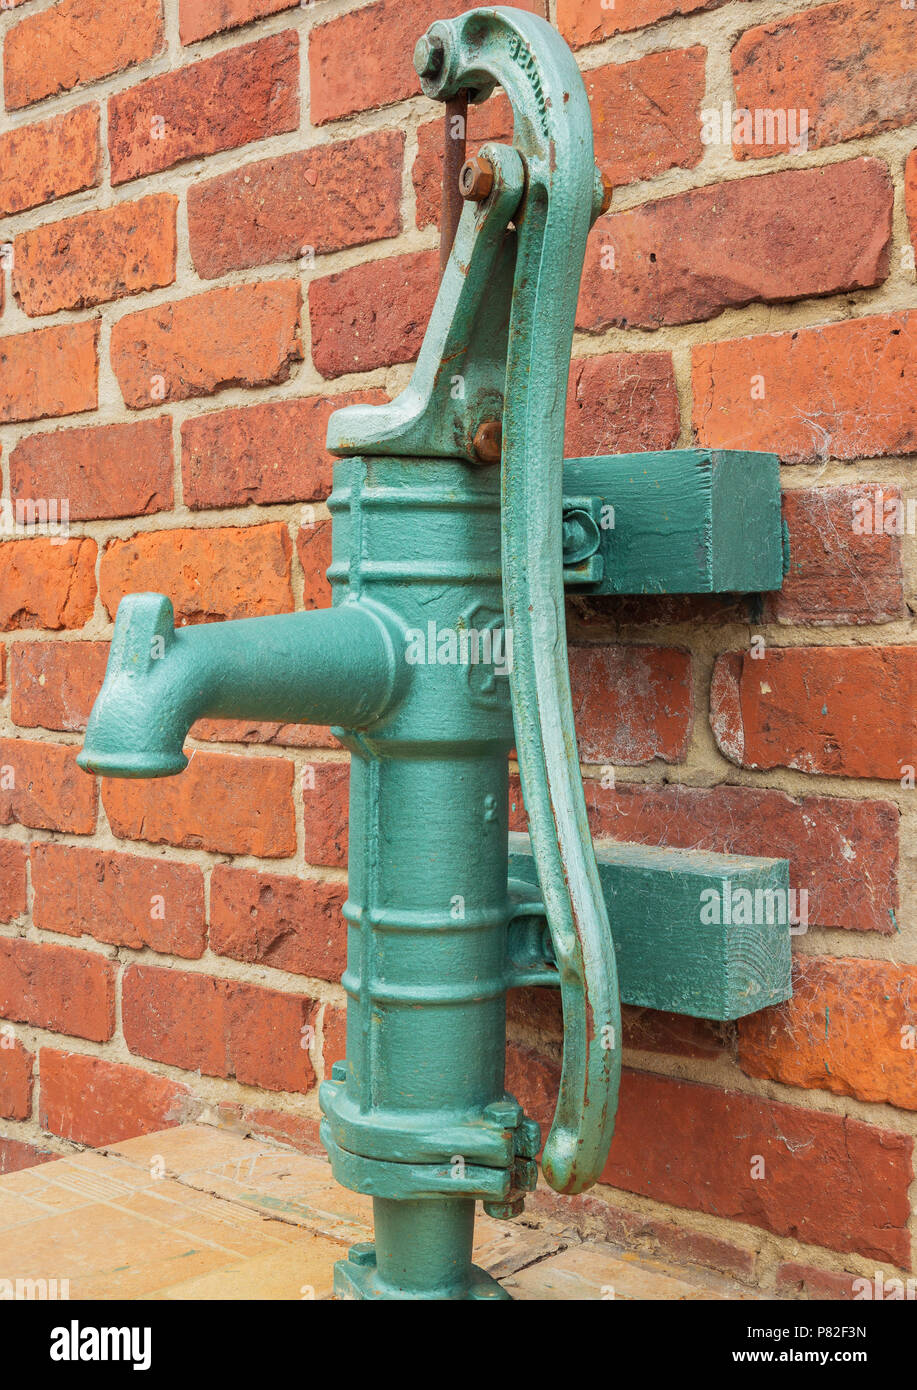 Handwasserpumpe - Retro- Pumpe Stockbild - Bild von stein, schön: 26787009